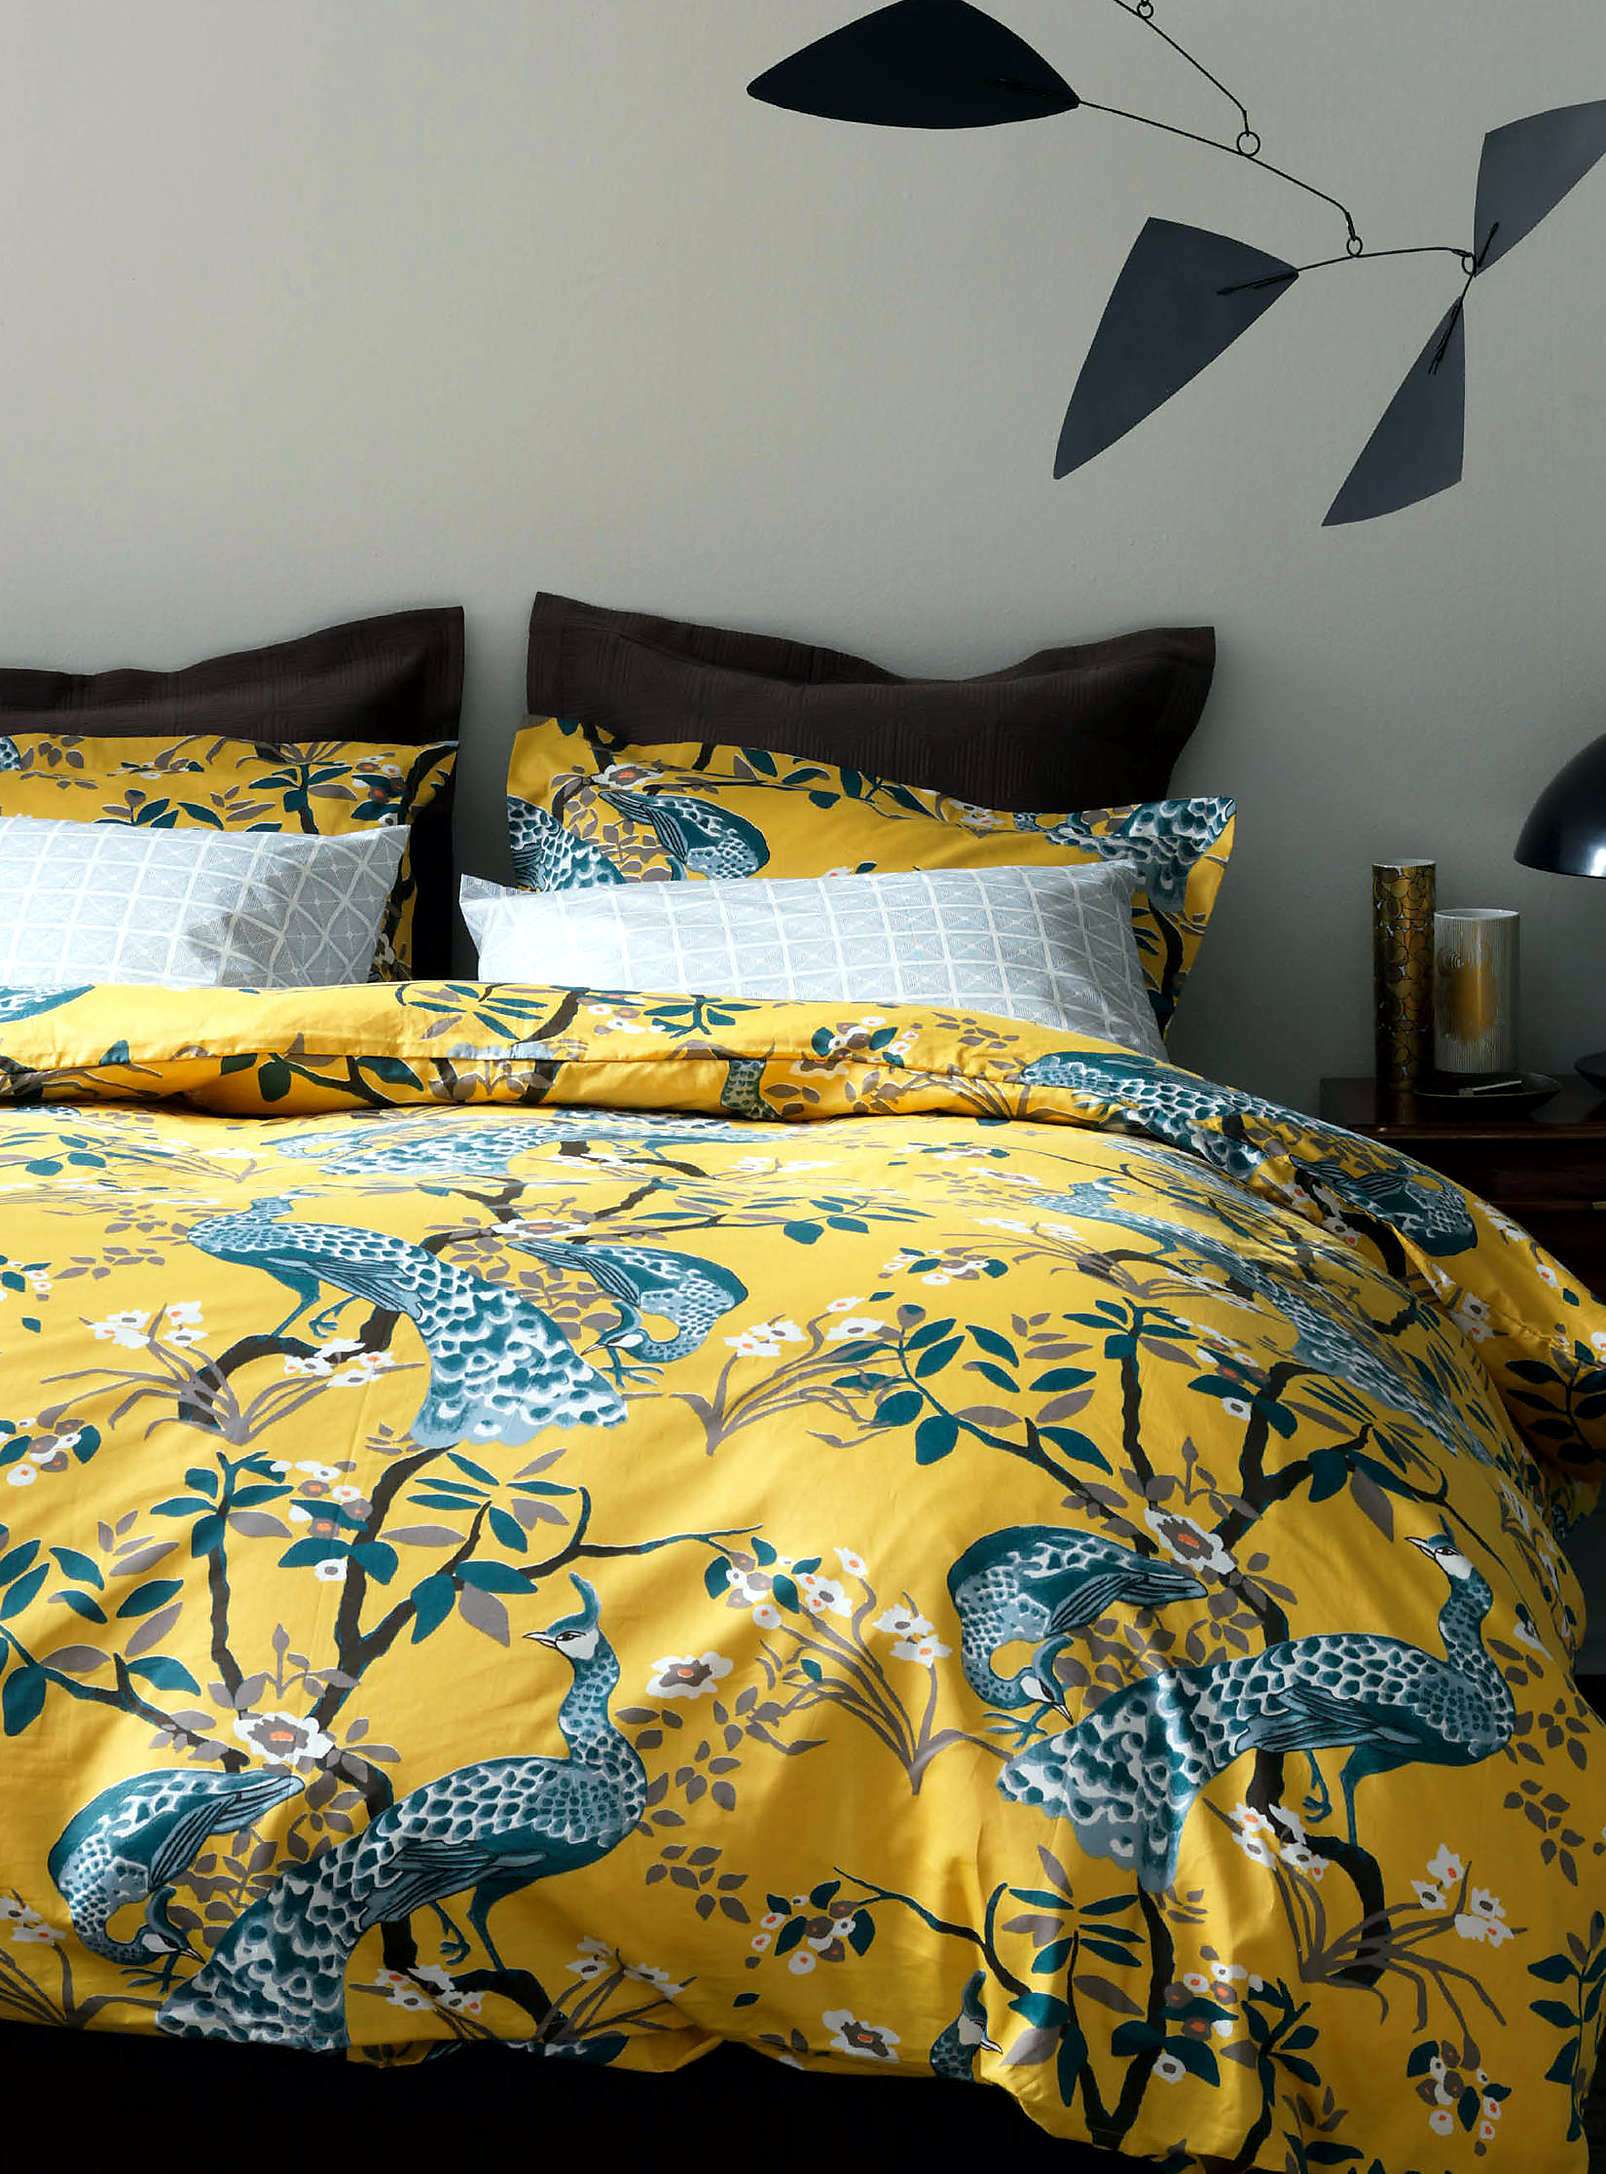 Top 10: quilts, comforters room